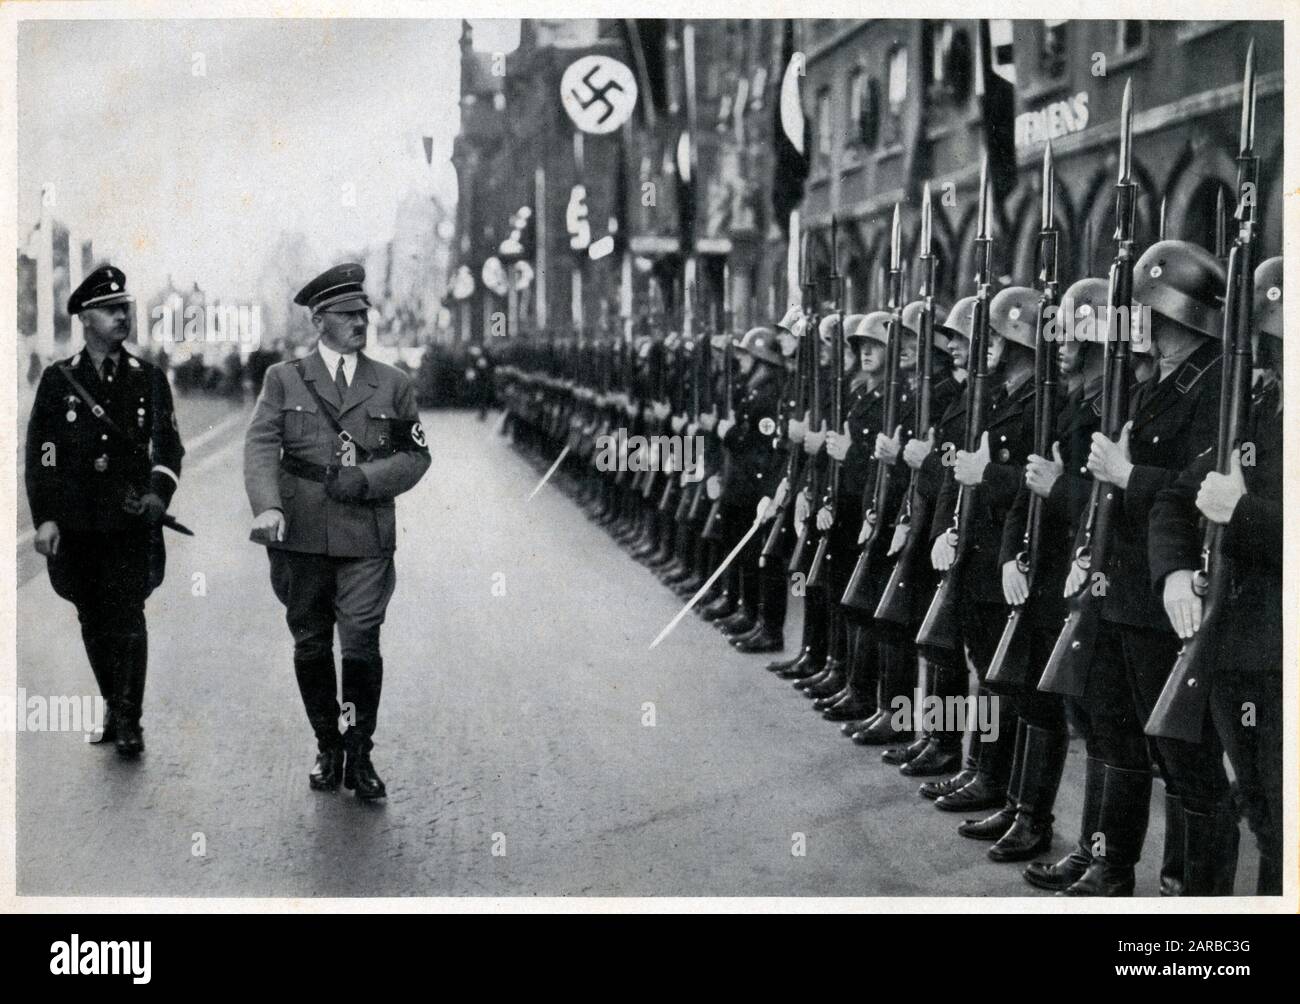 Hitler stellte die gegen die Juden gerichteten Nürnberger Gesetze über Staatsbürgerschaft und Rasse vor. Erstmals zeigte er die Ergebnisse der deutschen Wiederaufrüstung. Datum: September 1935 Stockfoto